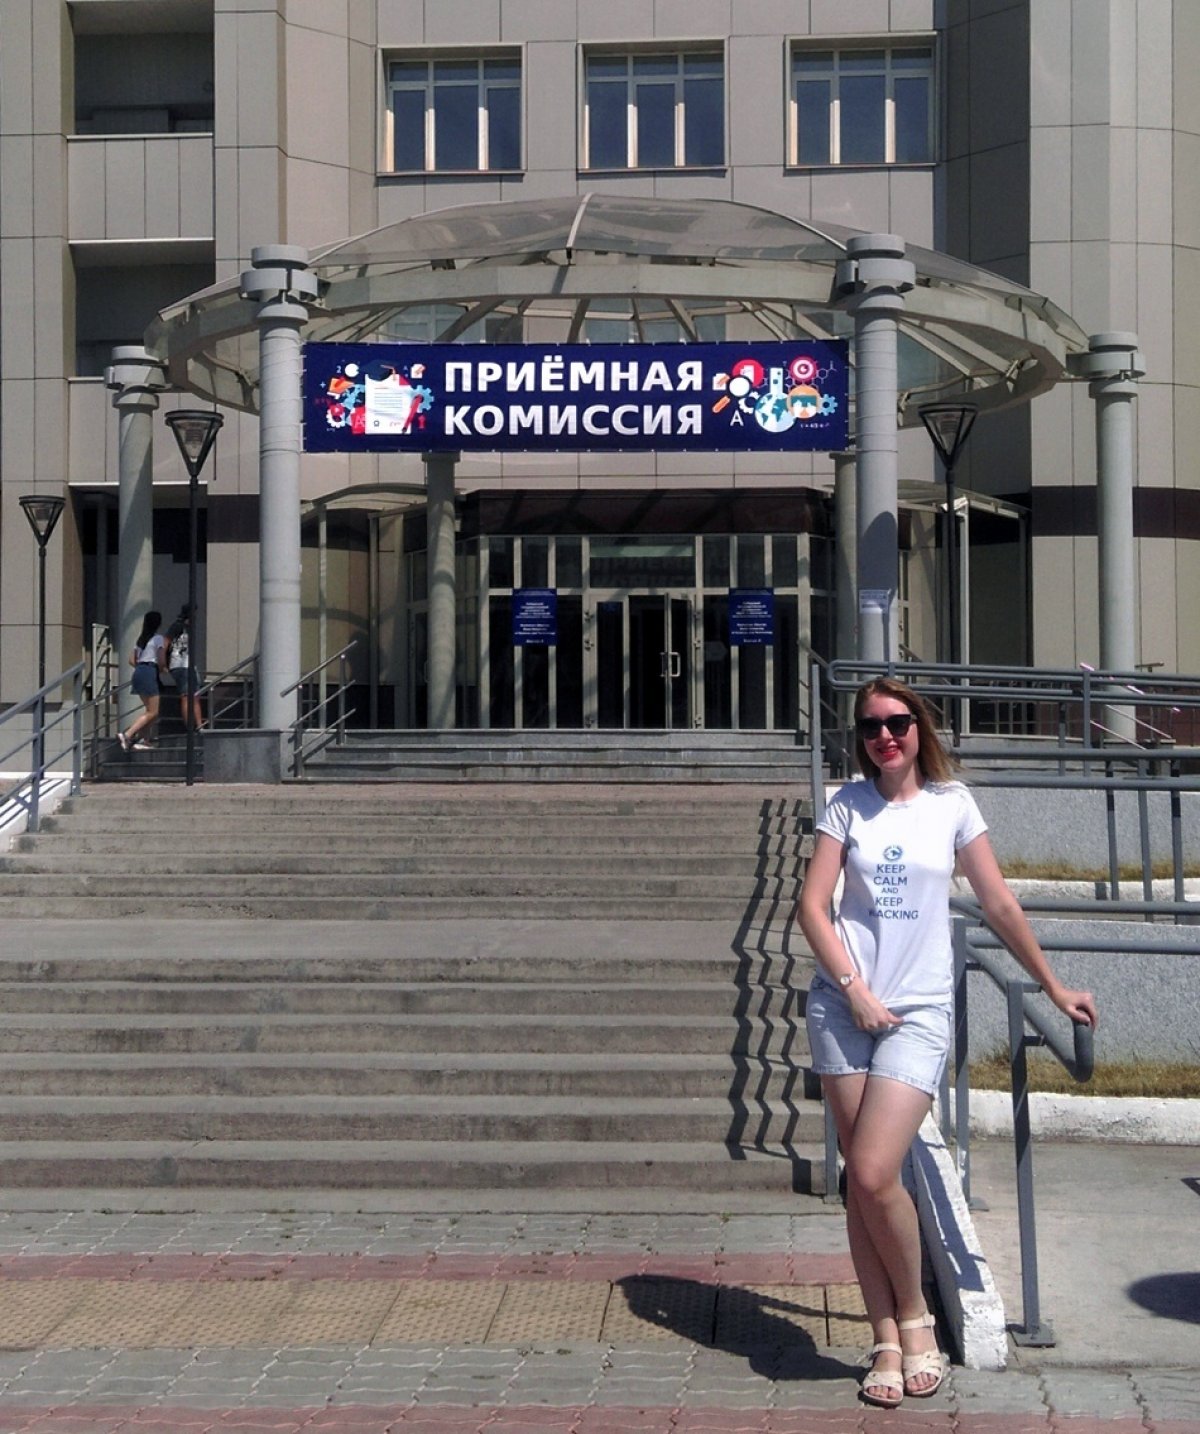 А вот и Анастасия - будущая магистрантка Опорного университета Красноярского края!